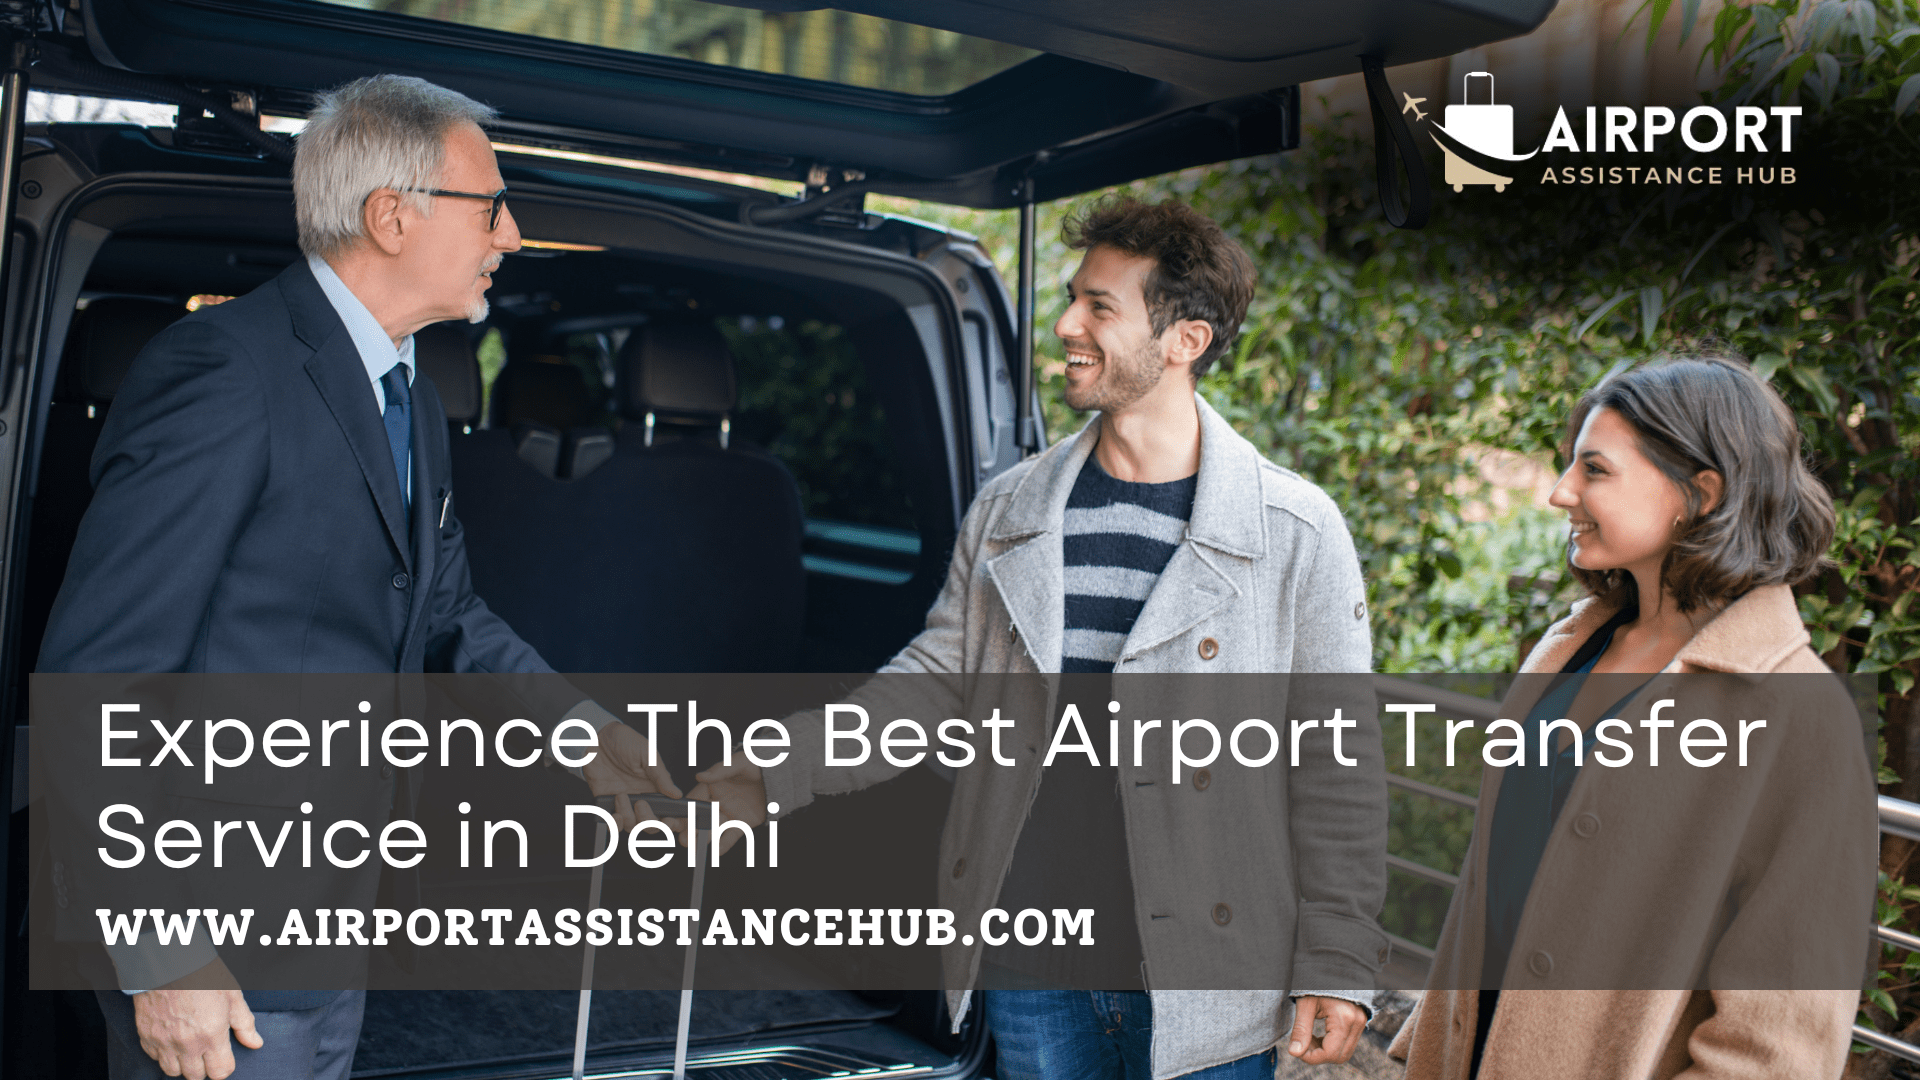 Delhi Airport Transfer service